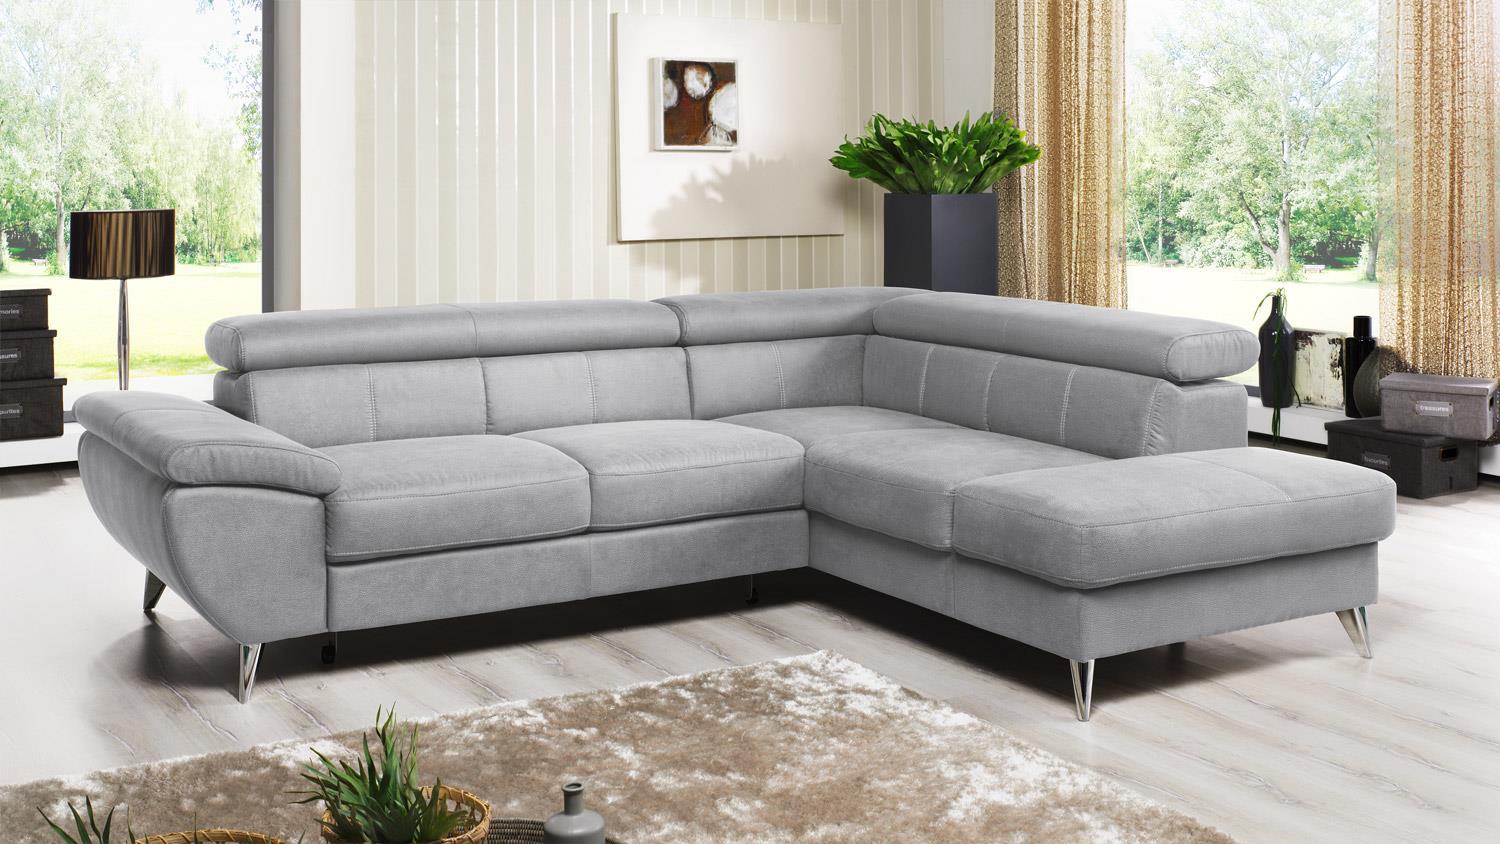 Ecksofa FINCA Wohnlandschaft Sofa in silver grau mit Funktion 260x207 Bild 1